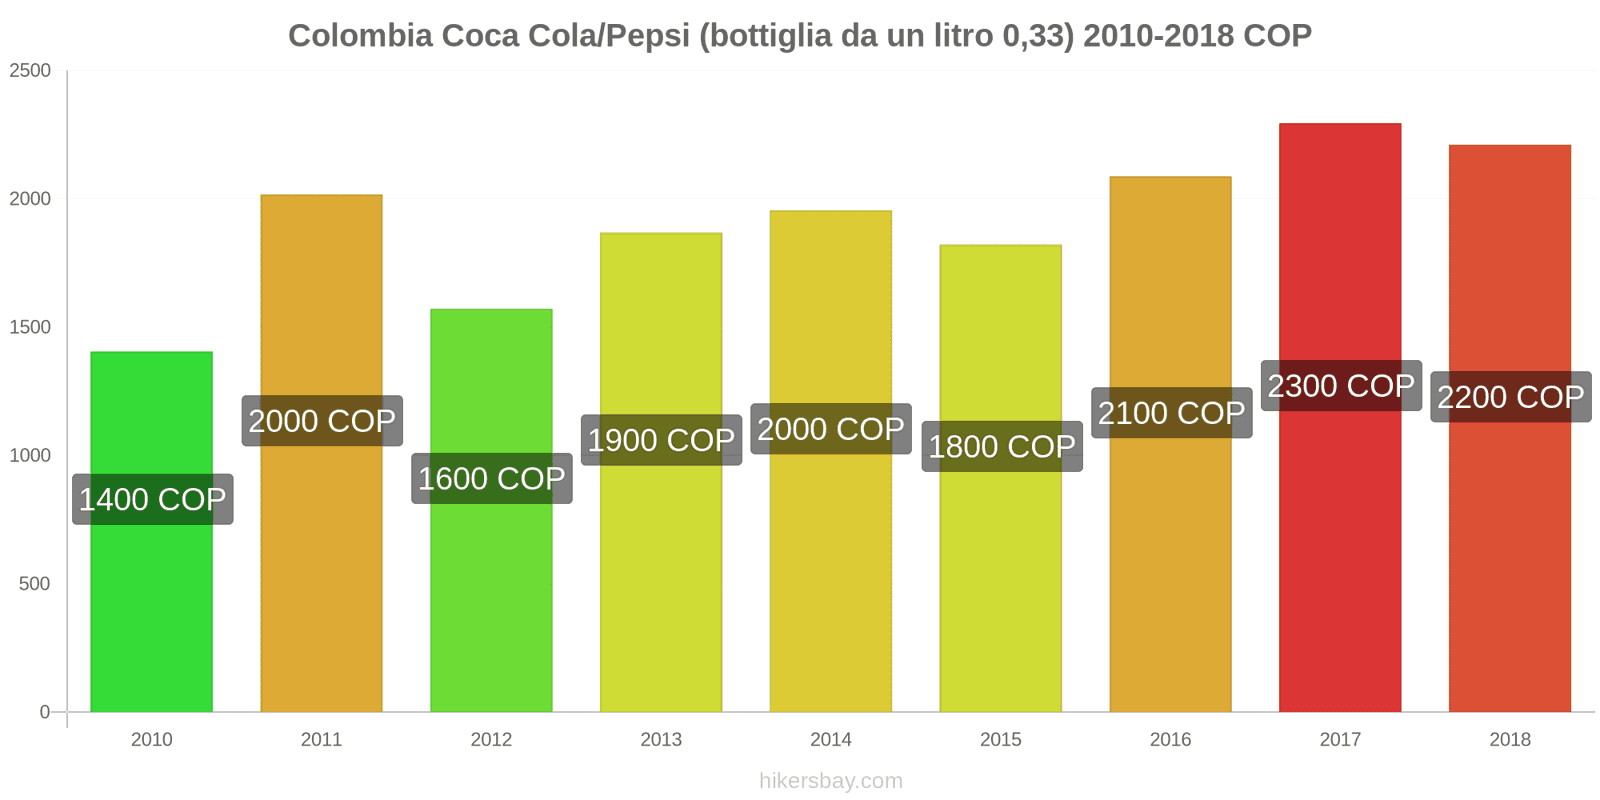 Colombia cambi di prezzo Coca-Cola/Pepsi (bottiglia da 0.33 litri) hikersbay.com